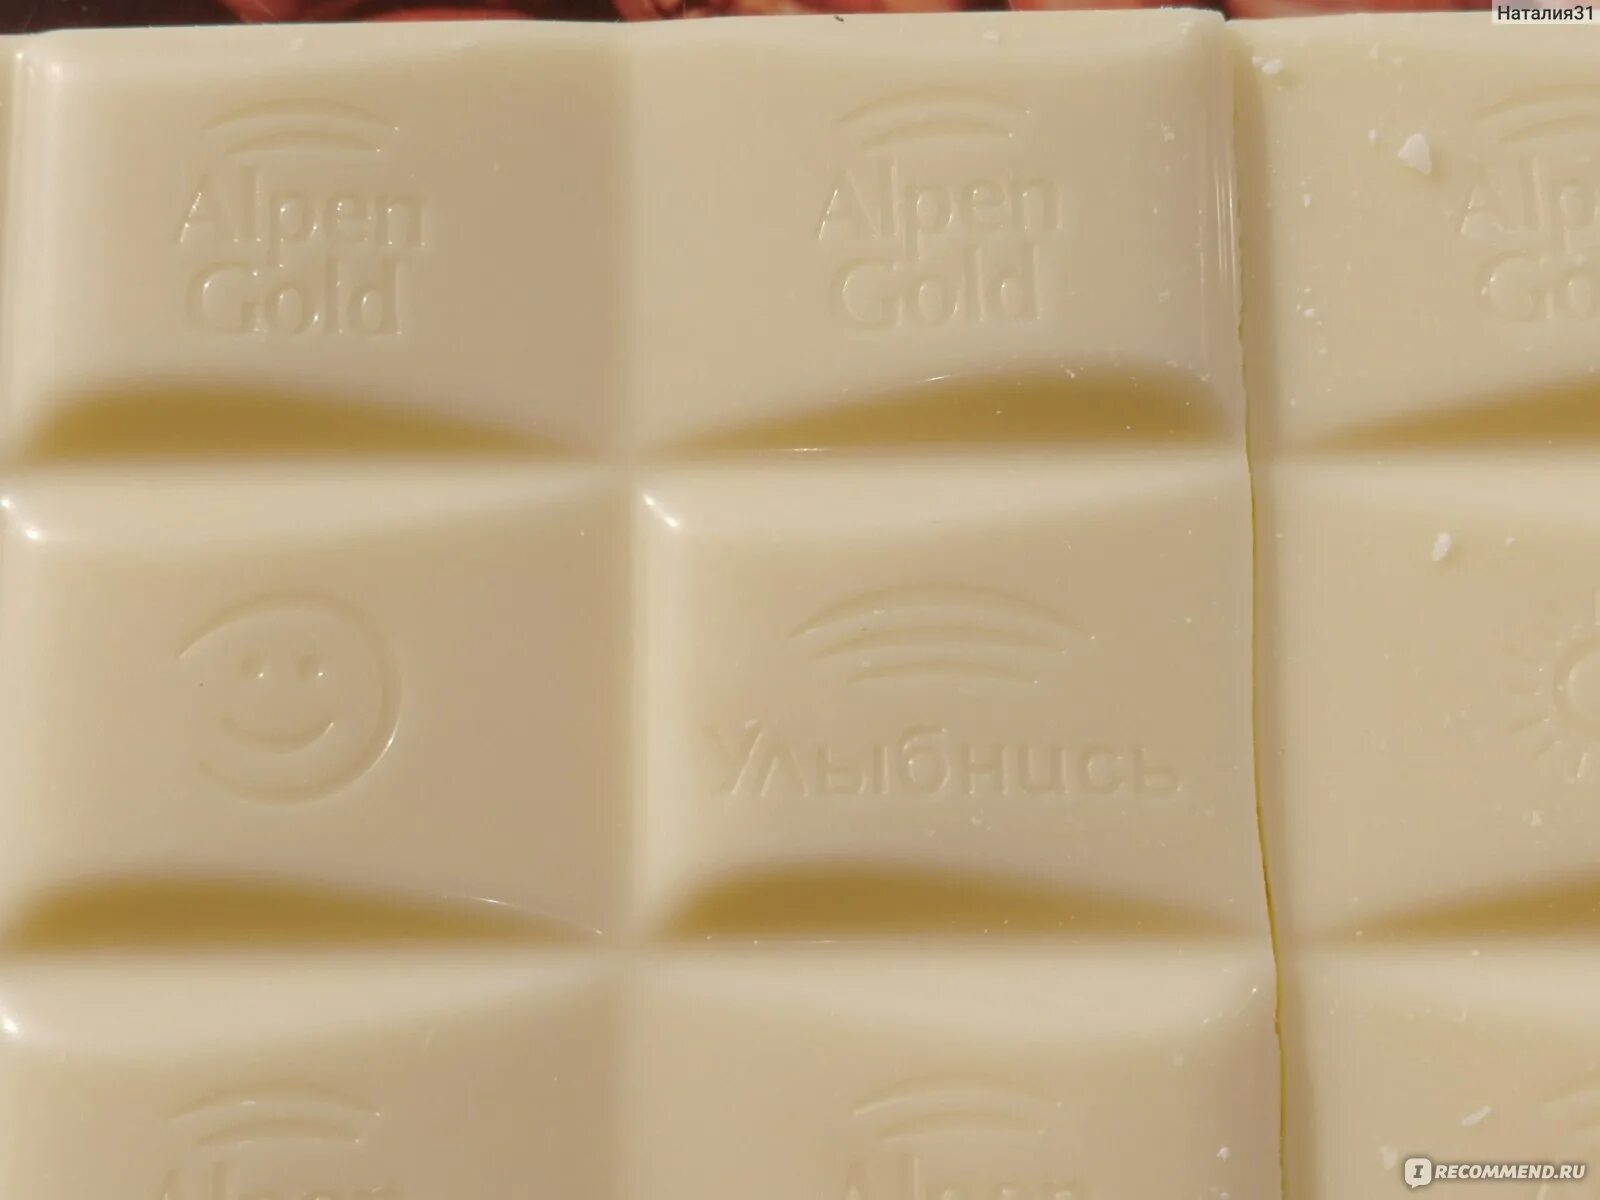 Ничего шоколада. Шоколад белый пористый Alpen Gold aerated 80гр. Белый пористый шоколад Альпен Гольд. Шоколадка Альпен Гольд белая пористая. Обычная белая шоколадка.